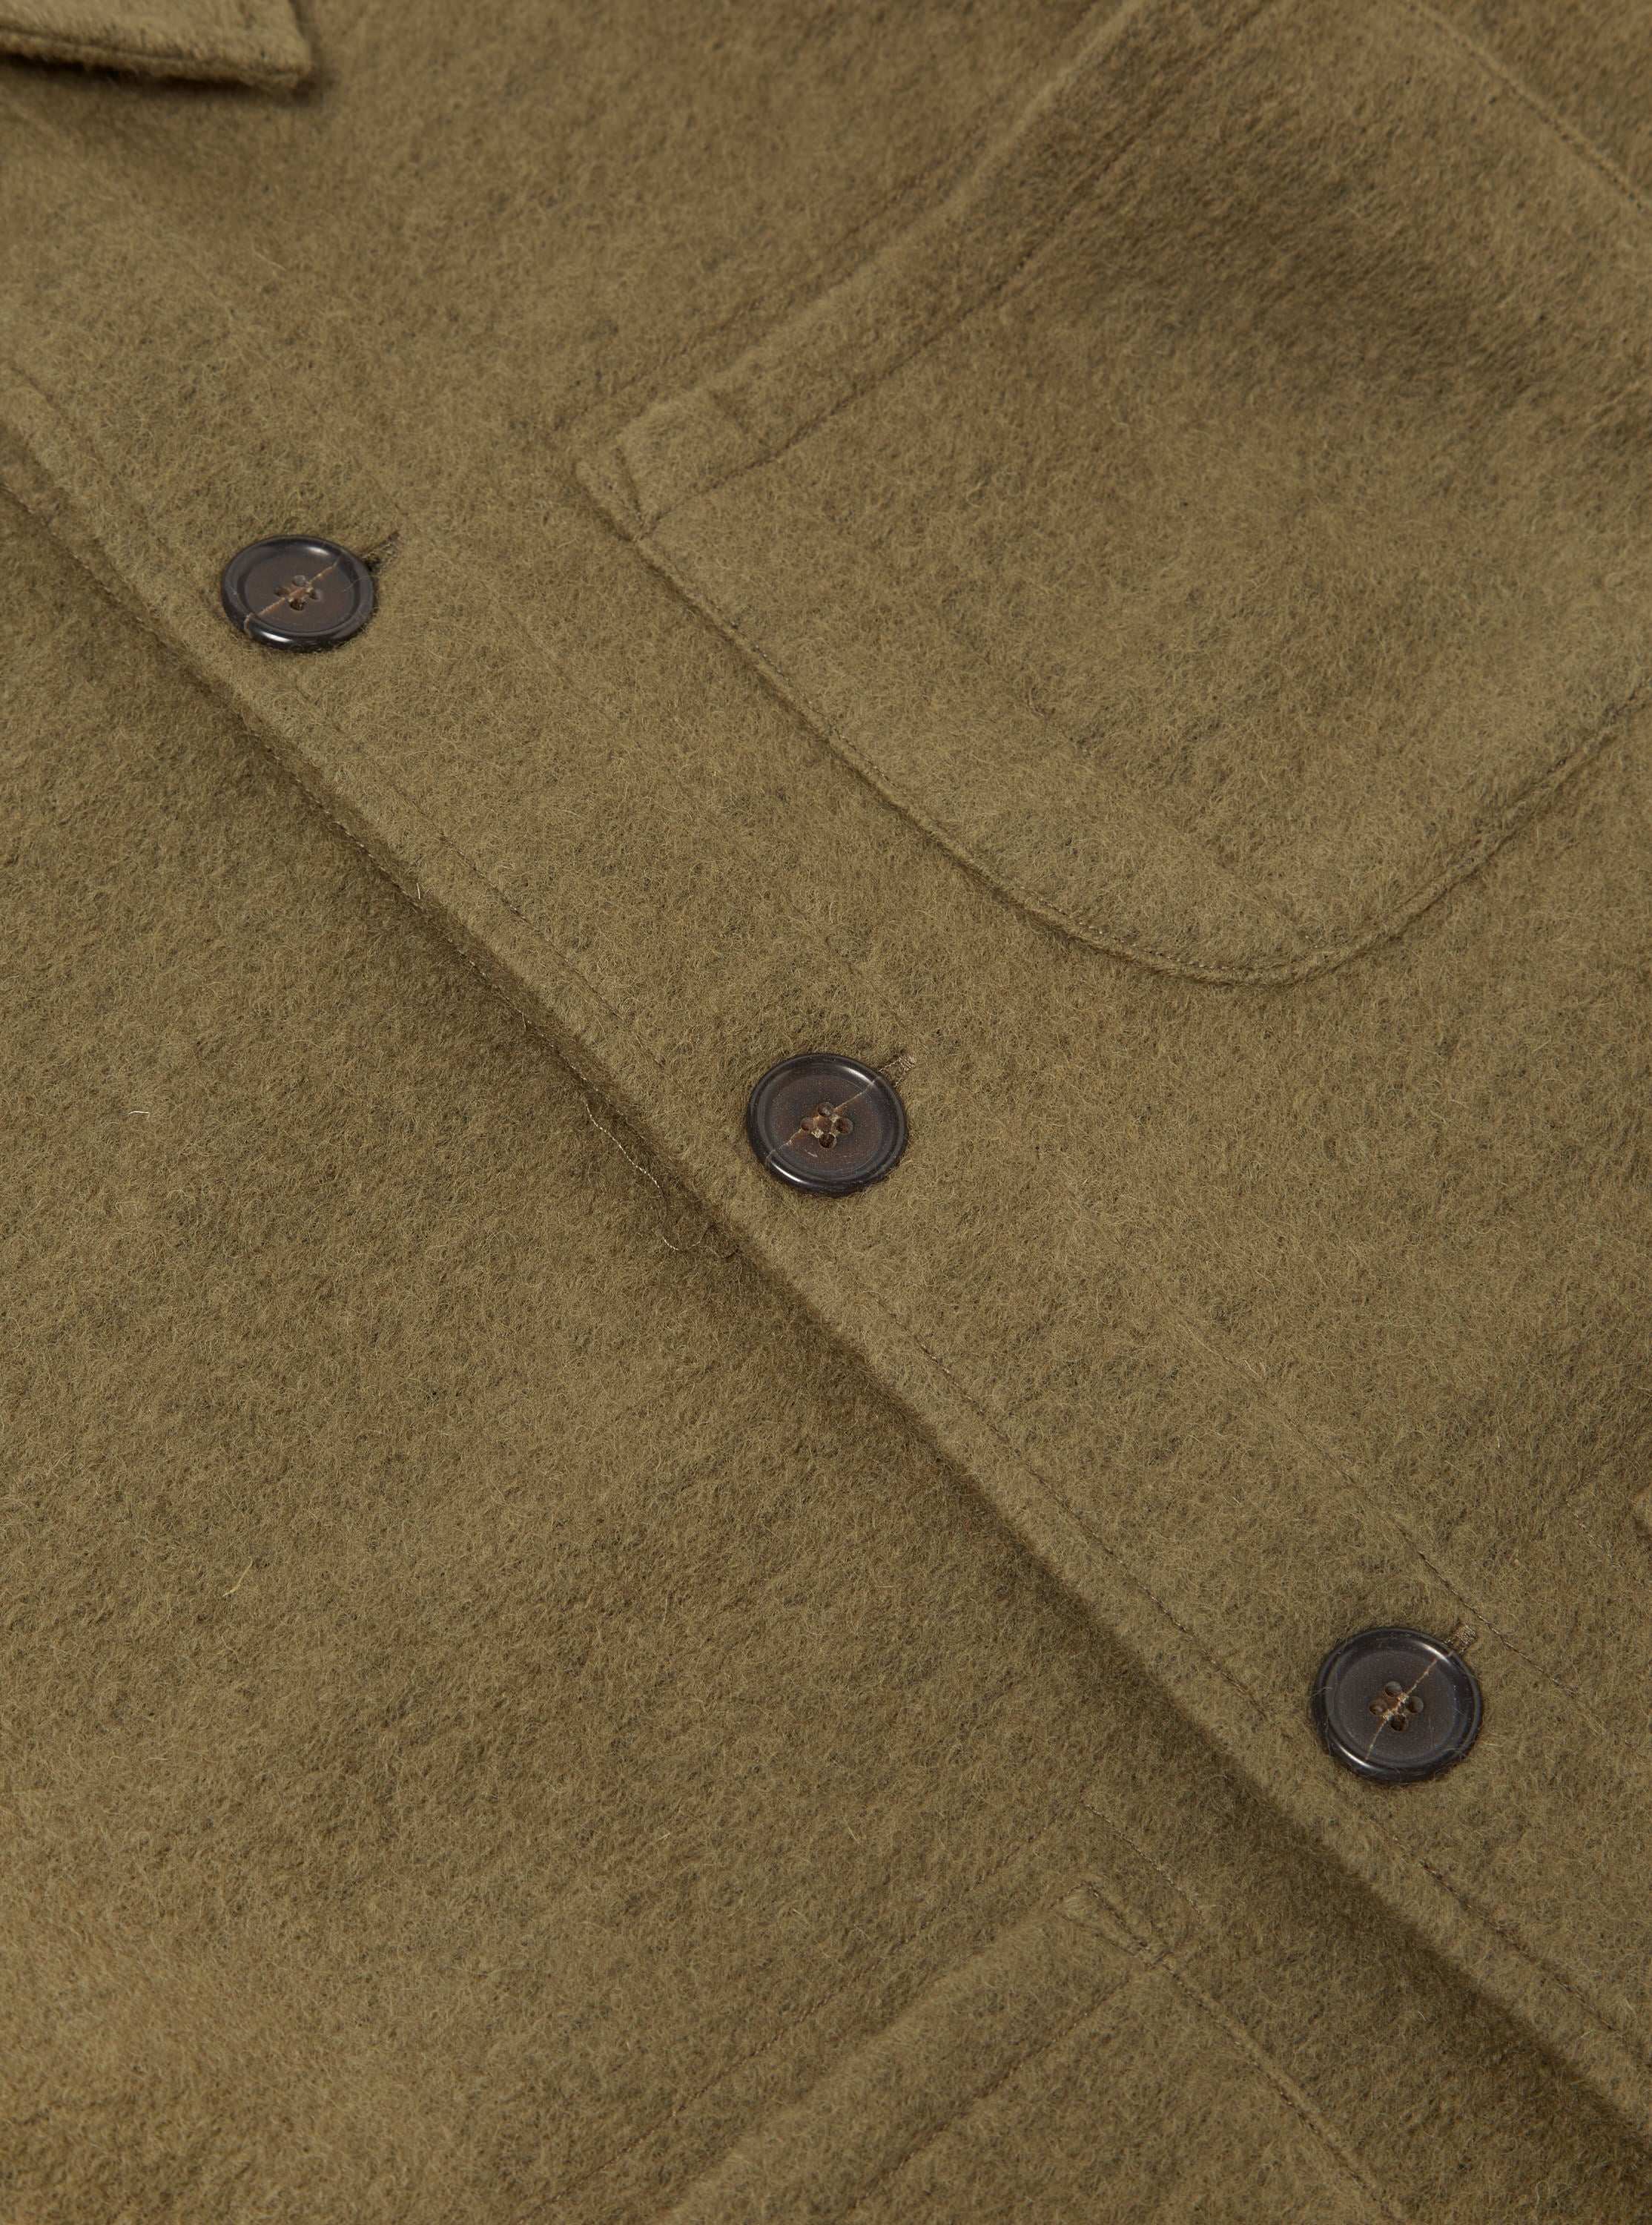 Universal Works Field Jacket in Lovat Wool Fleece